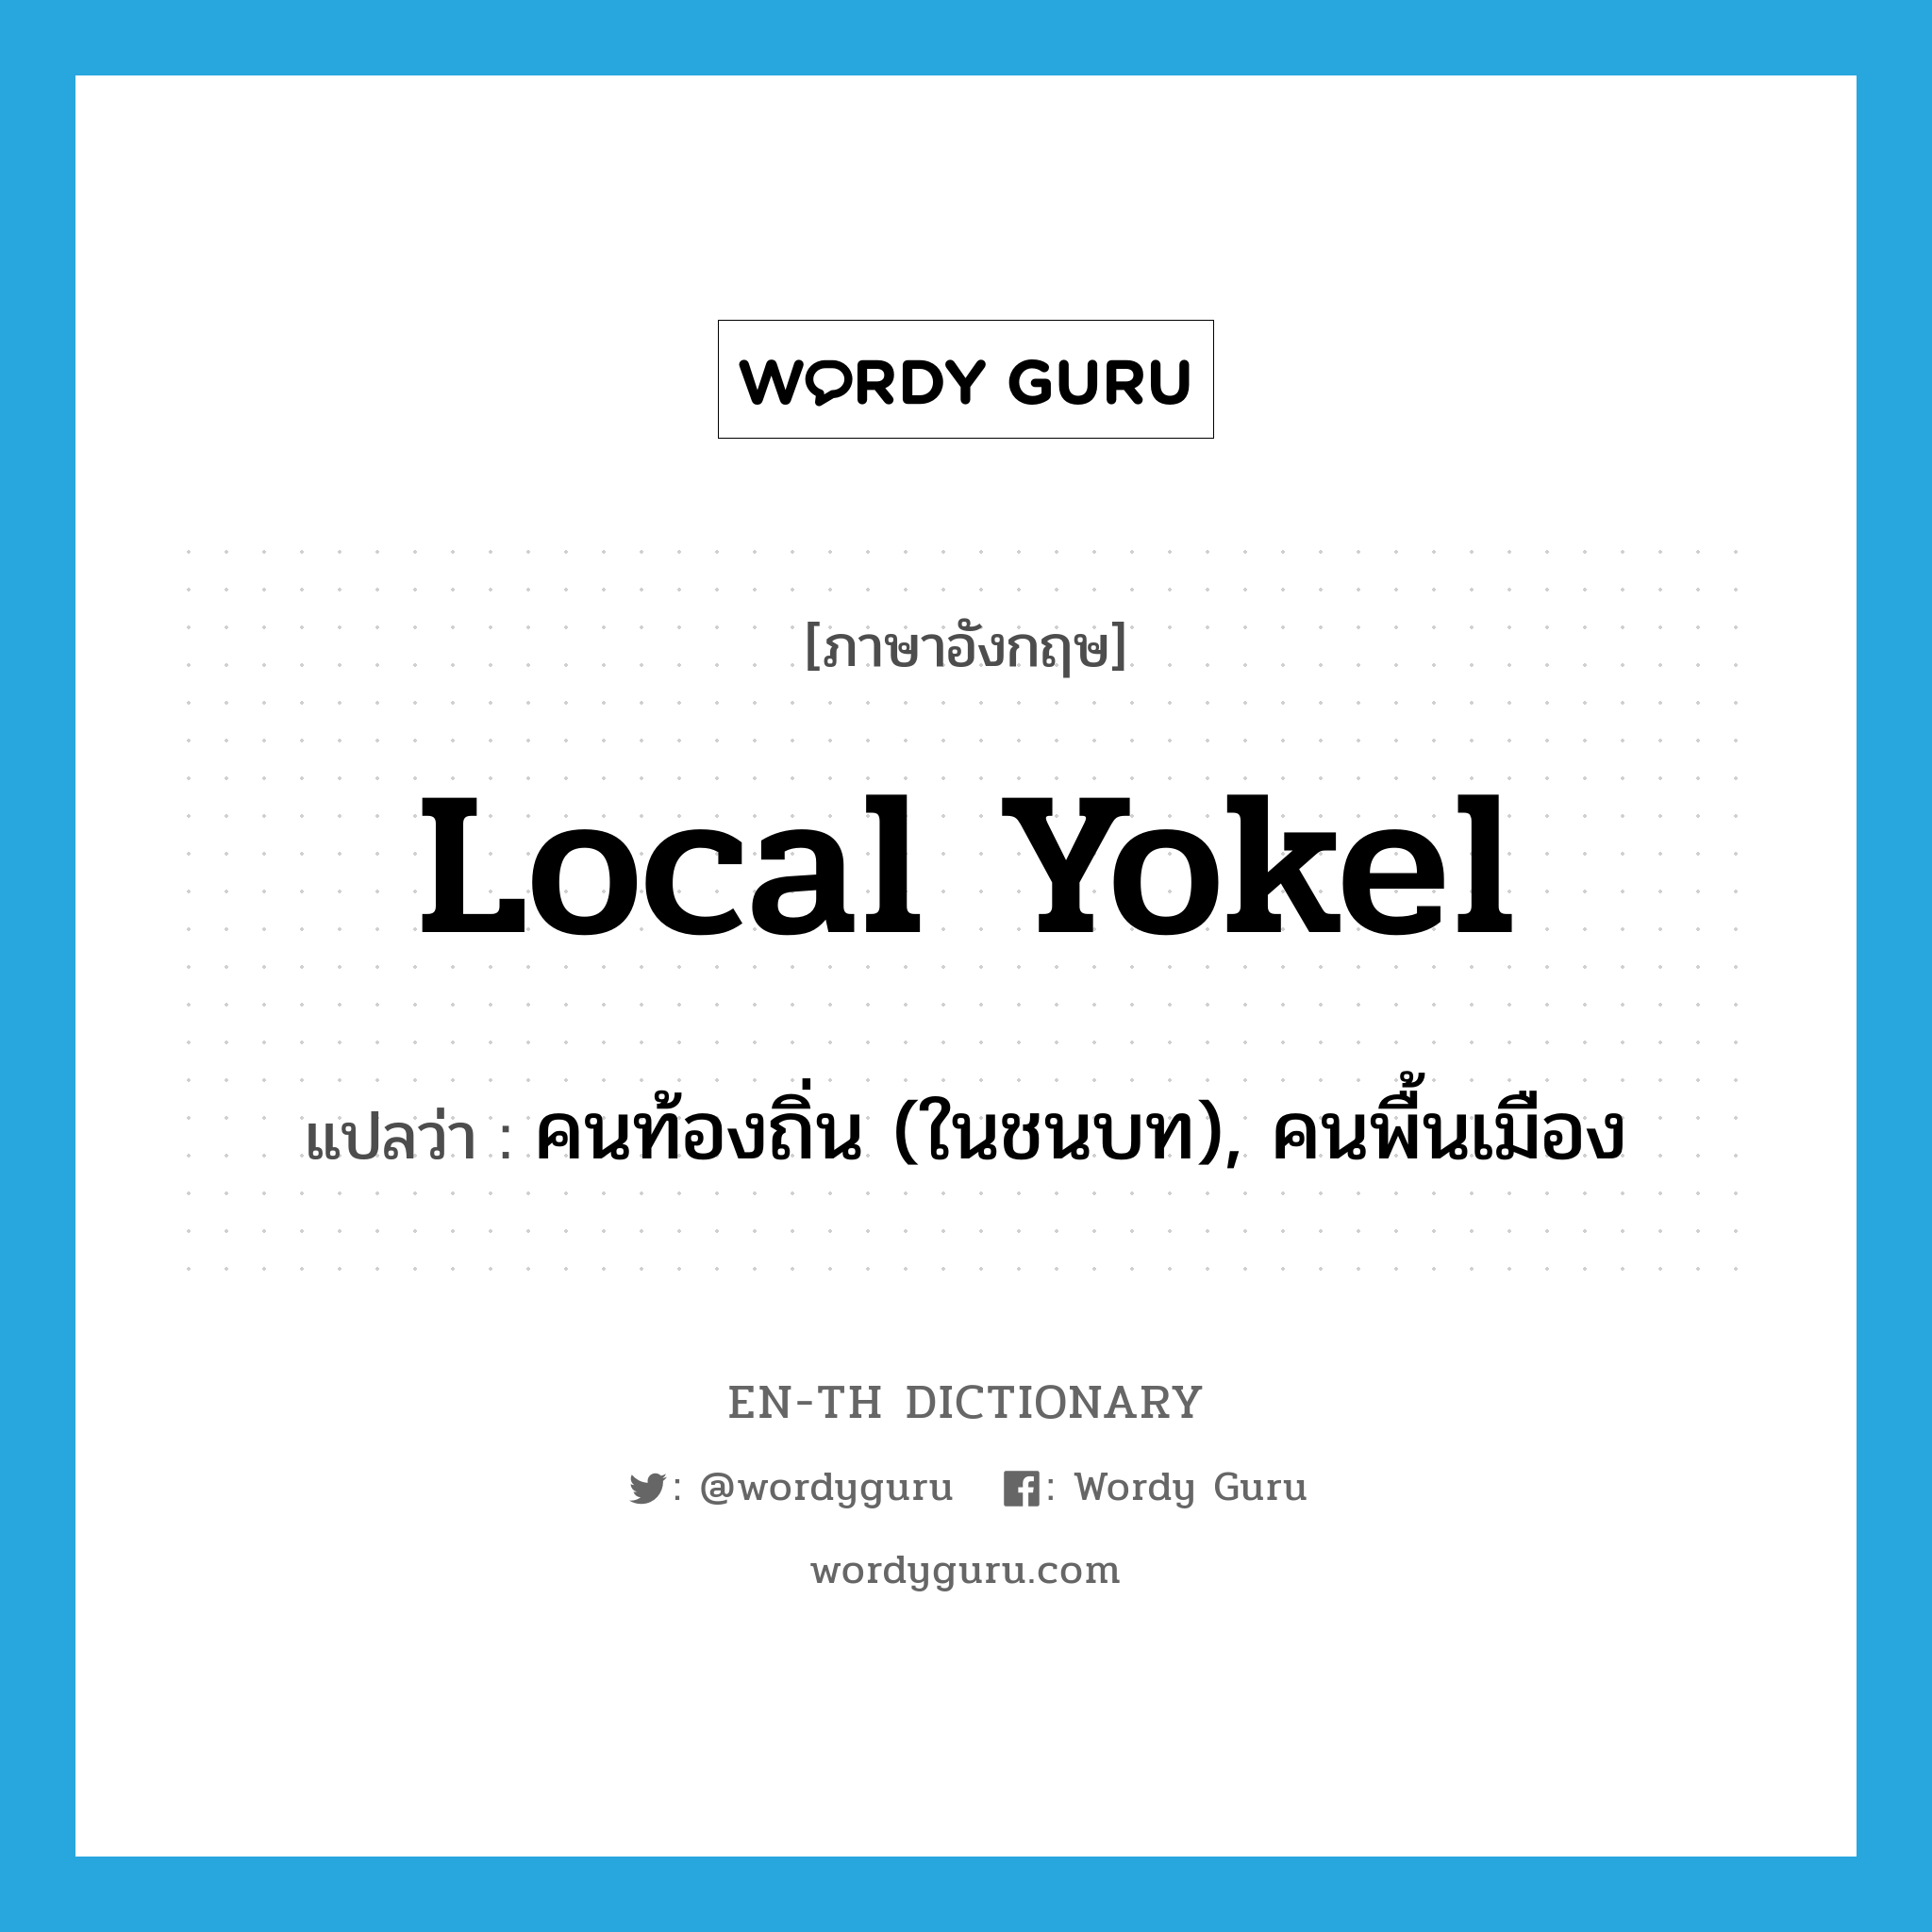 คนท้องถิ่น (ในชนบท), คนพื้นเมือง ภาษาอังกฤษ?, คำศัพท์ภาษาอังกฤษ คนท้องถิ่น (ในชนบท), คนพื้นเมือง แปลว่า local yokel ประเภท SL หมวด SL